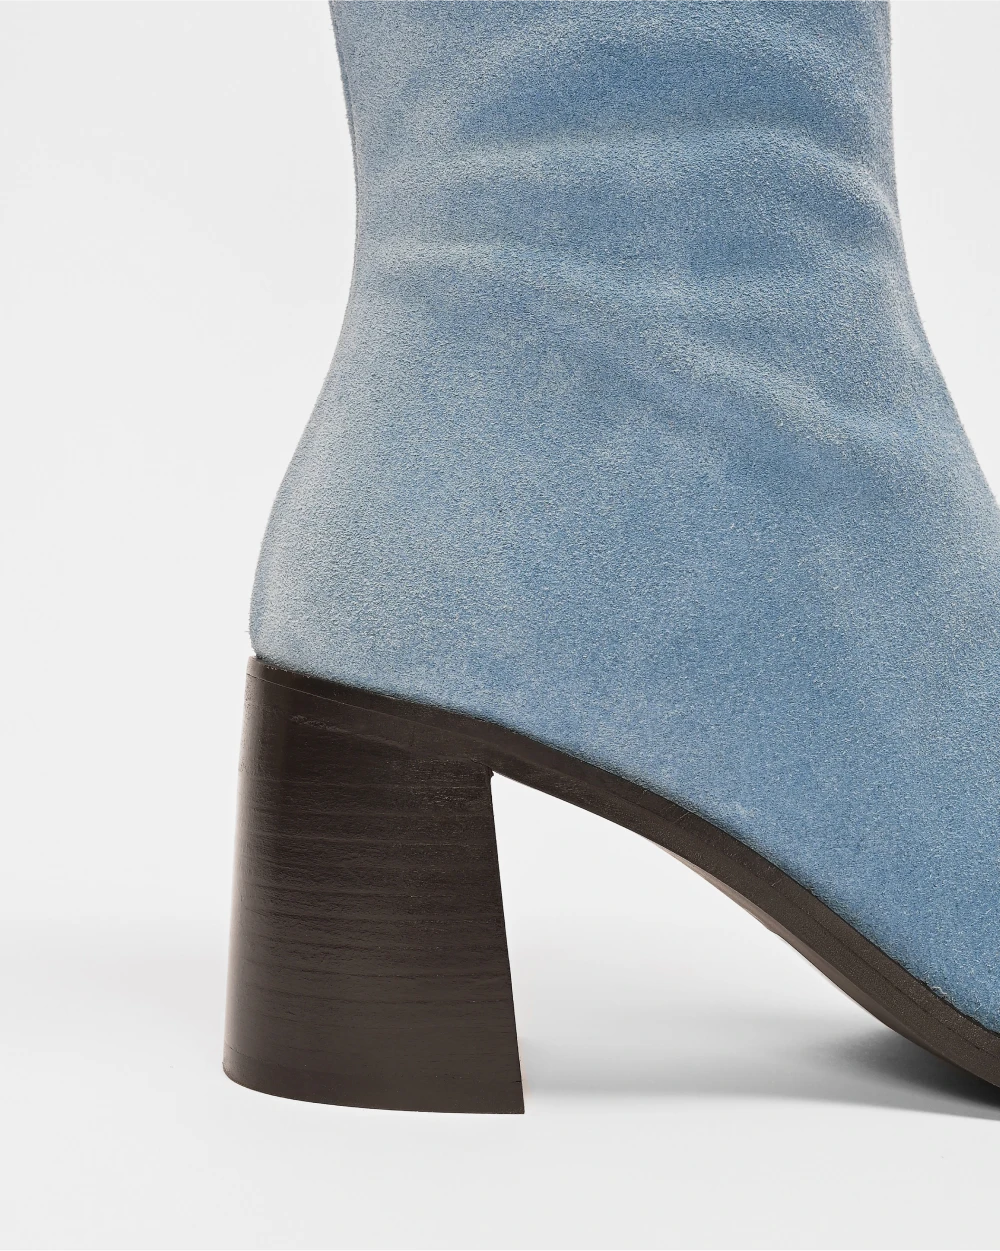 CRISTOBAL les bottes à talons épais au style retro et cuir d'exception upcyclé daim bleu ciel.